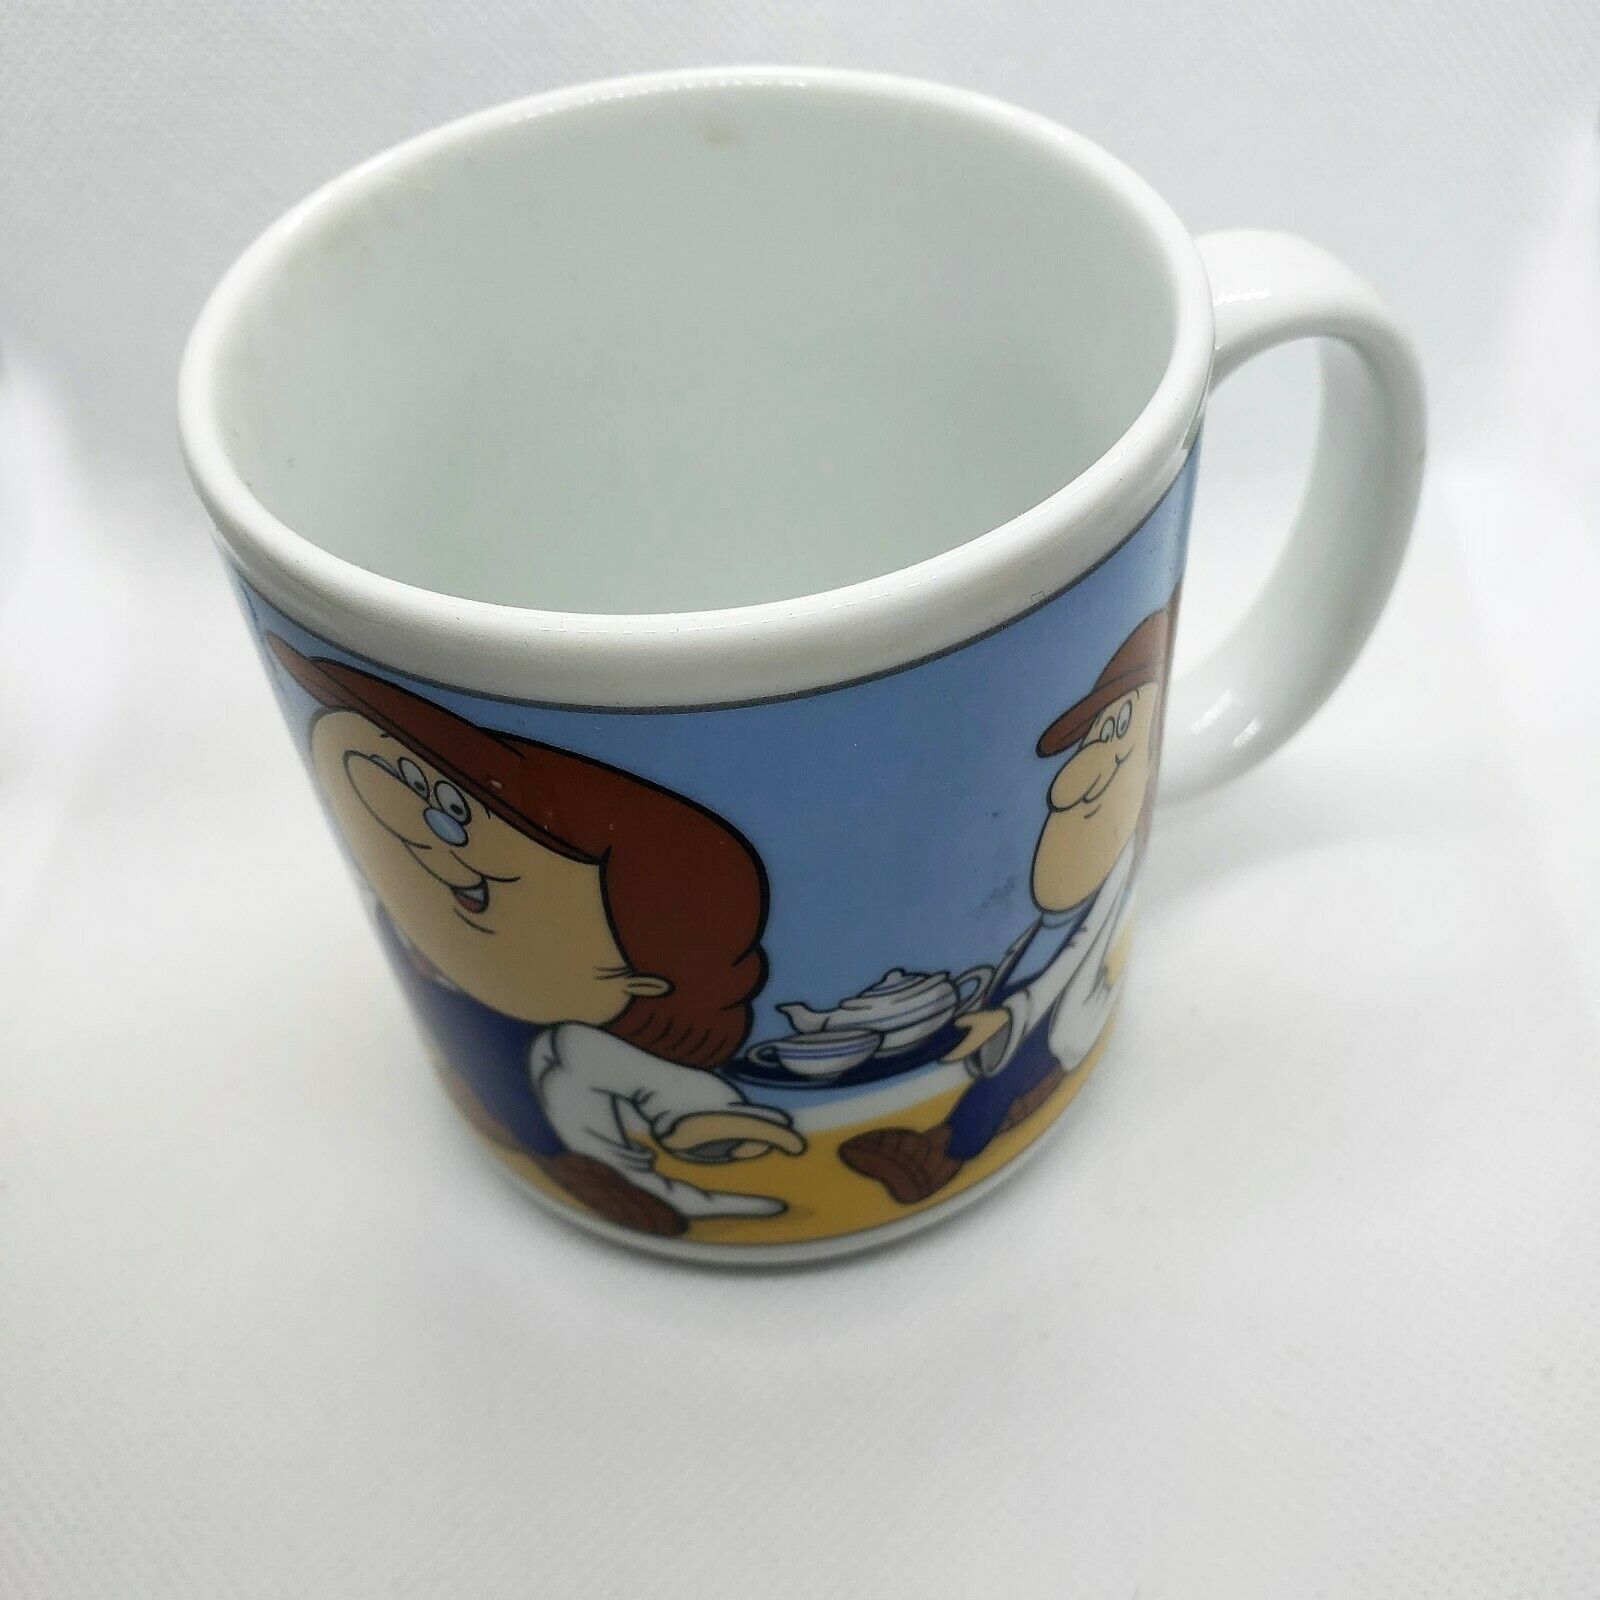 Tetley Tea Collectible Mug - $20.59